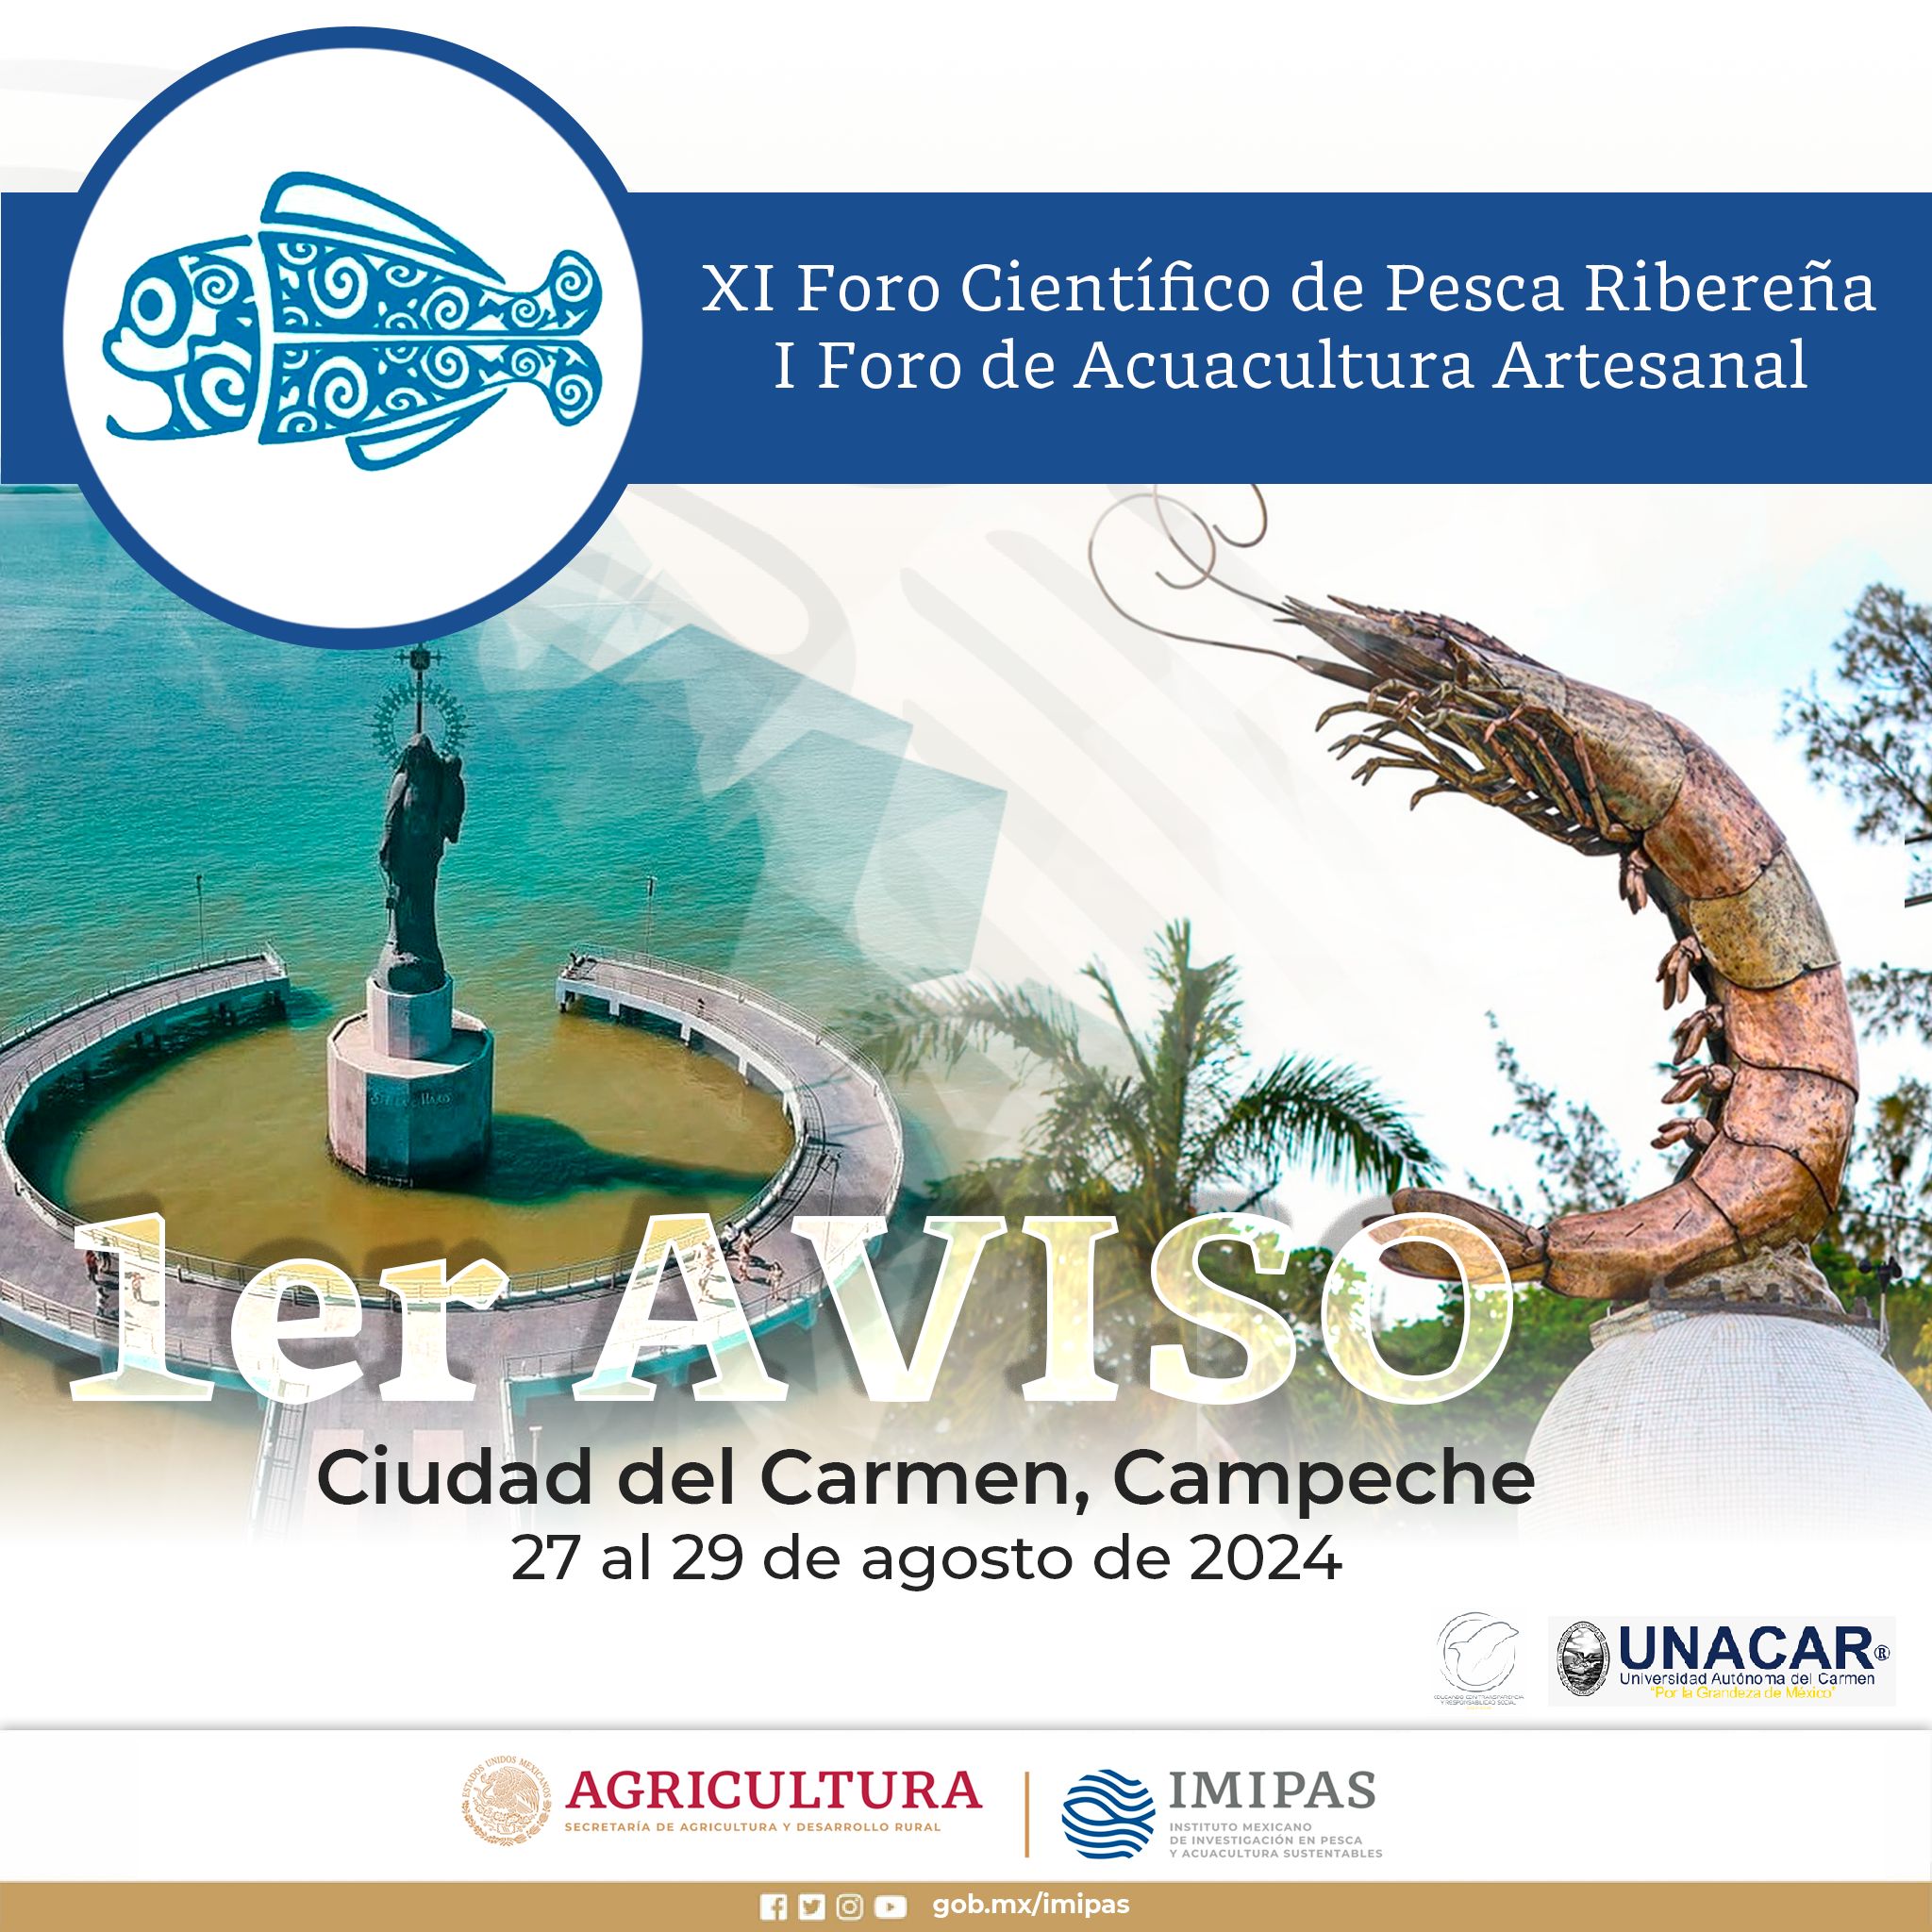 XI Foro Científico de Pesca Ribereña y I Foro de Acuacultura Artesanal